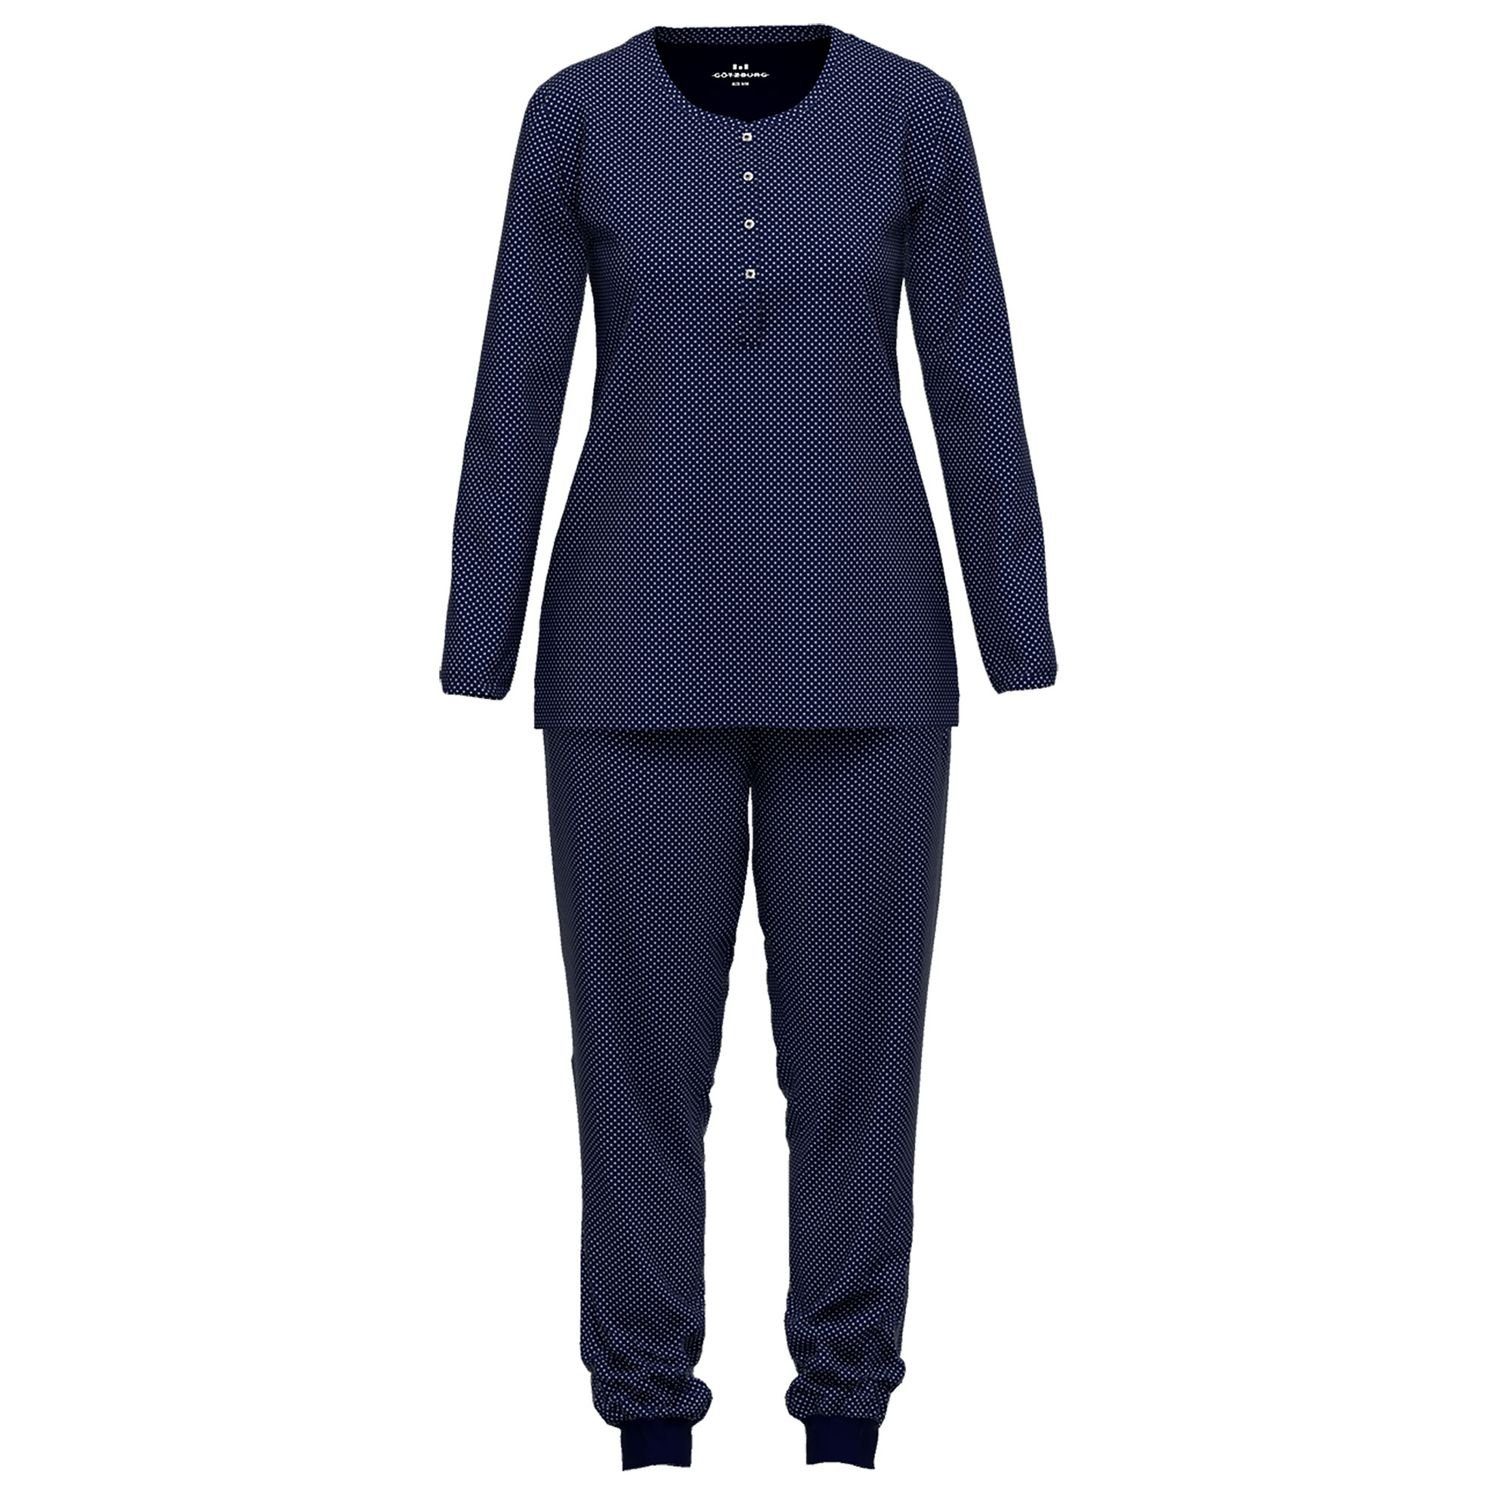 GÖTZBURG Schlafanzug mit Henley-Auschnitt, Knöpfe, langarm, weich, bequem, reine Baumolle navy / weiß gepunktet | Pyjamas